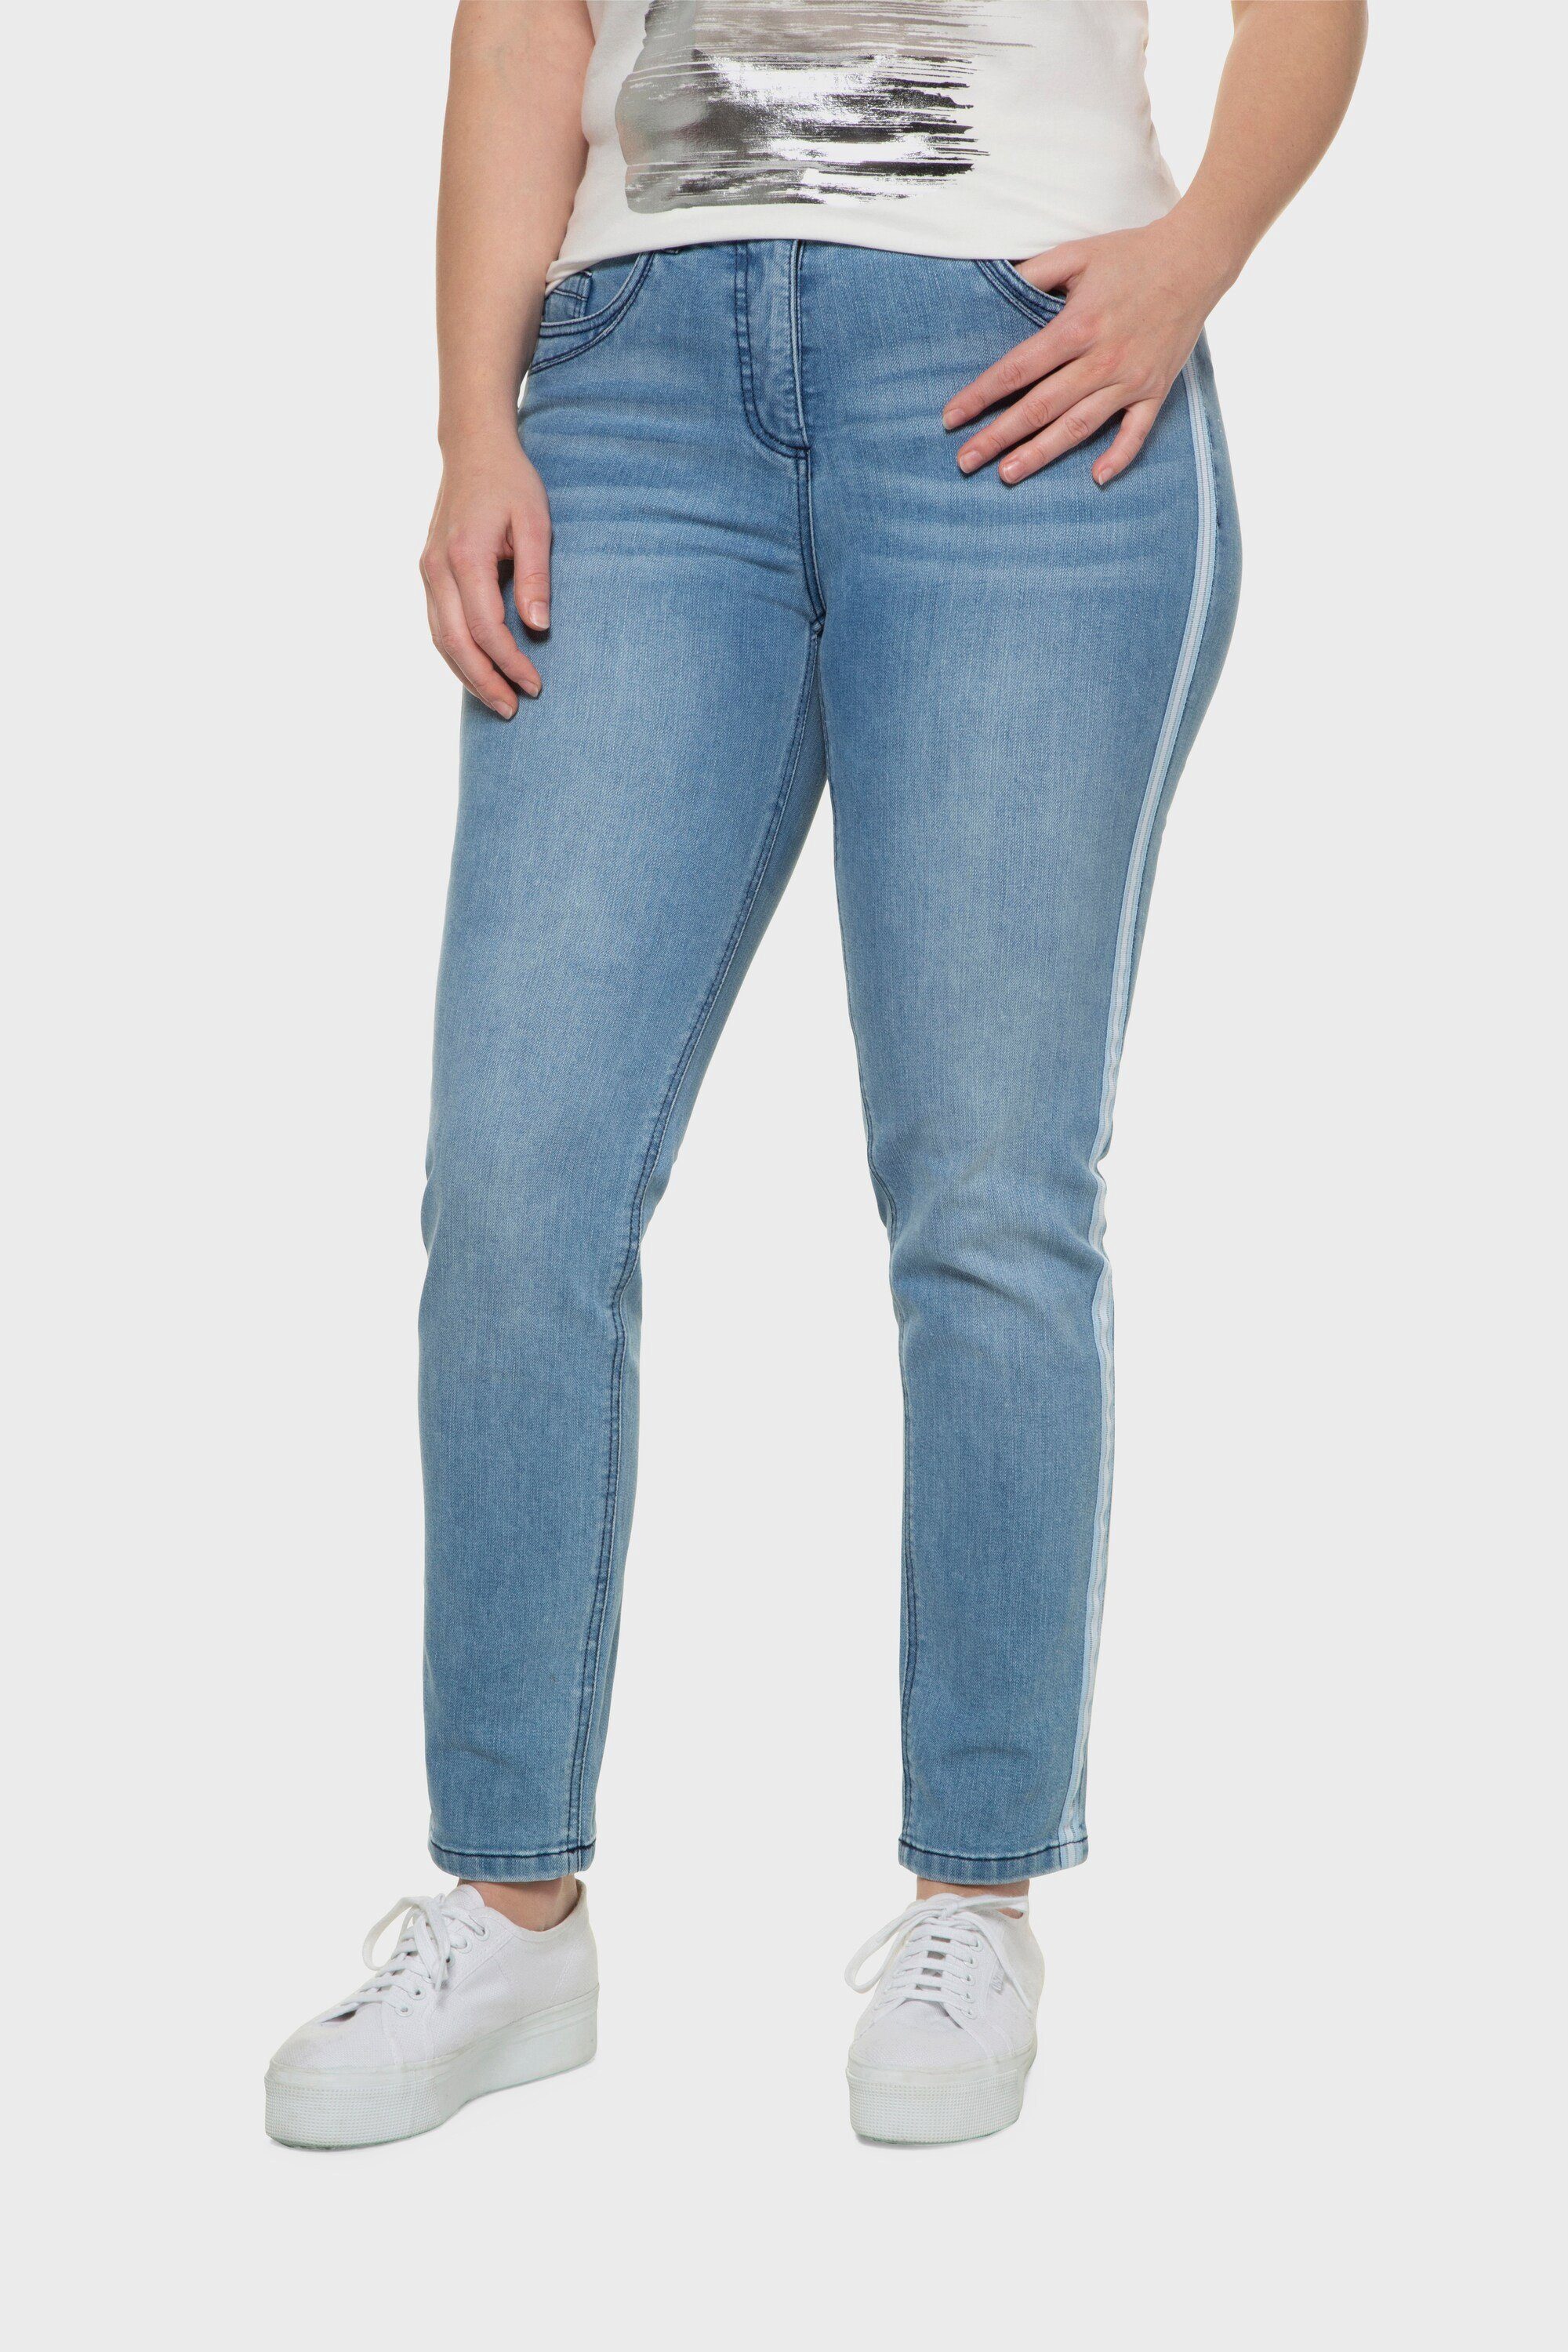 Ulla Popken 5-Pocket-Jeans »Jeans Sarah Galonstreifen bequeme  5-Pocket-Form« online kaufen | OTTO